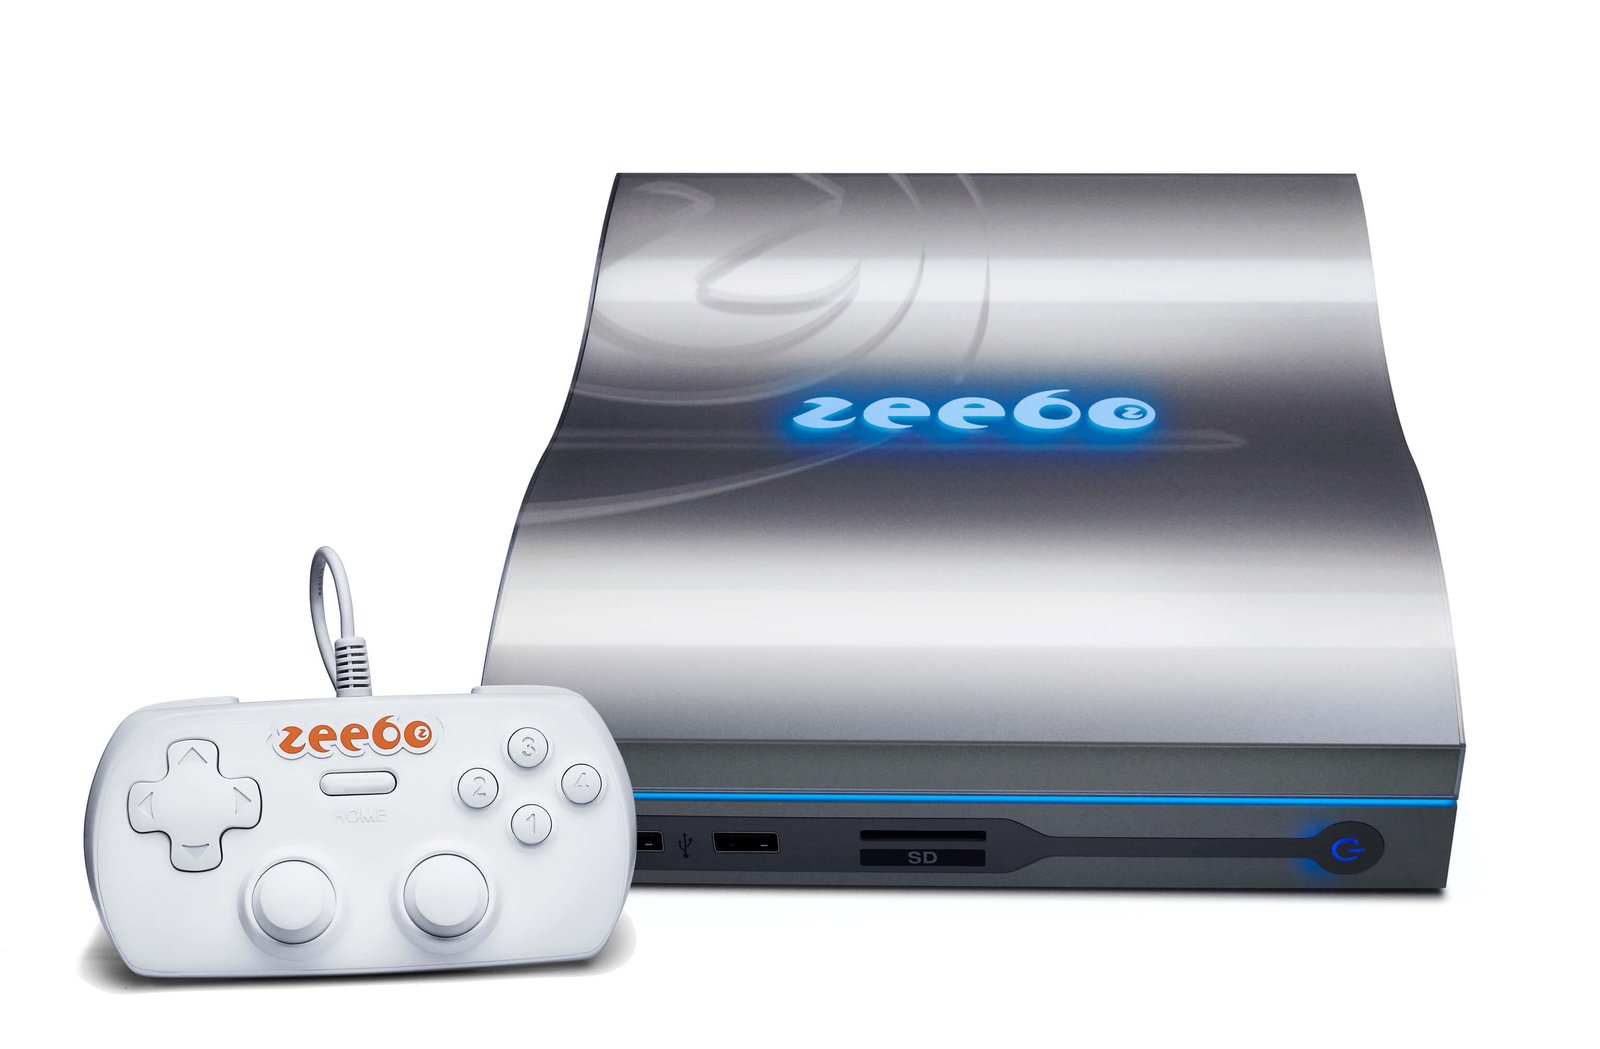 Imagem do console Zeebo.